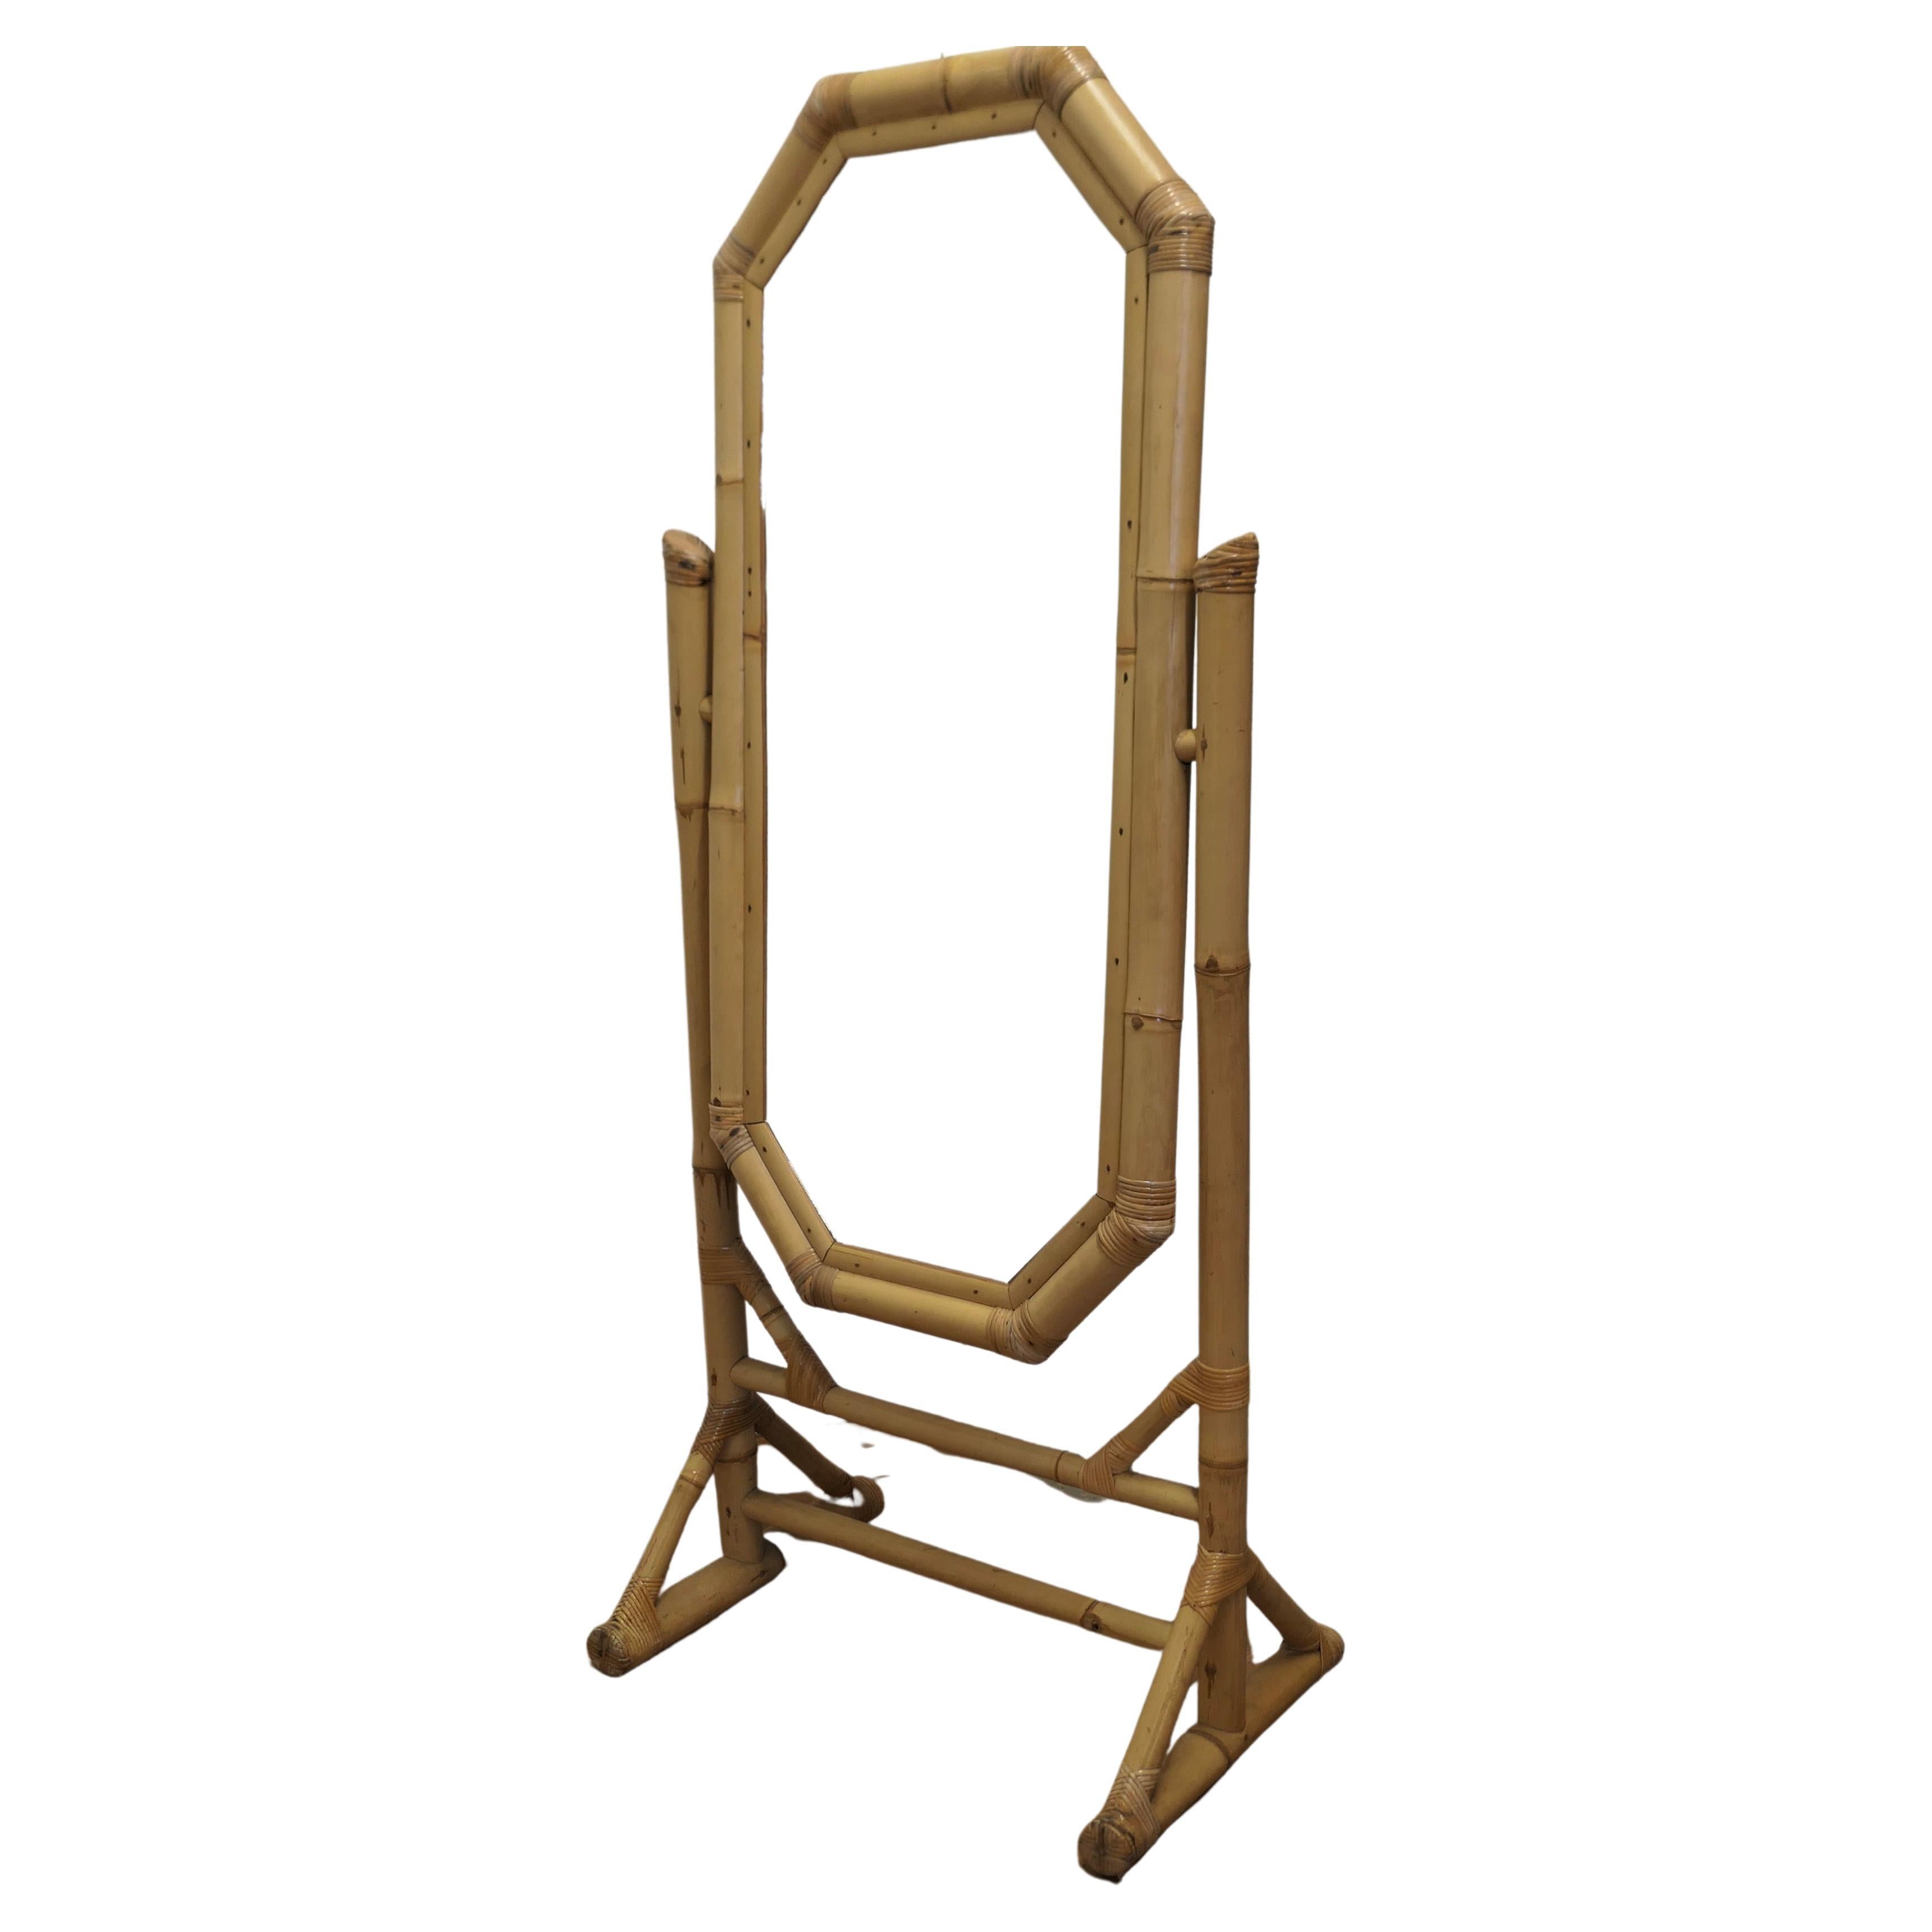 Art Deco Riesiger Bambus Cheval Spiegel

Dies ist ein sehr attraktives Stück, der hohe Spiegel ist mit einem breiten Bambusrahmen umrahmt, er Spiegel sitzt in einem stabilen Rahmen,  der Rahmen ist ebenfalls aus Jumbo-Bambus und die Beine haben eine